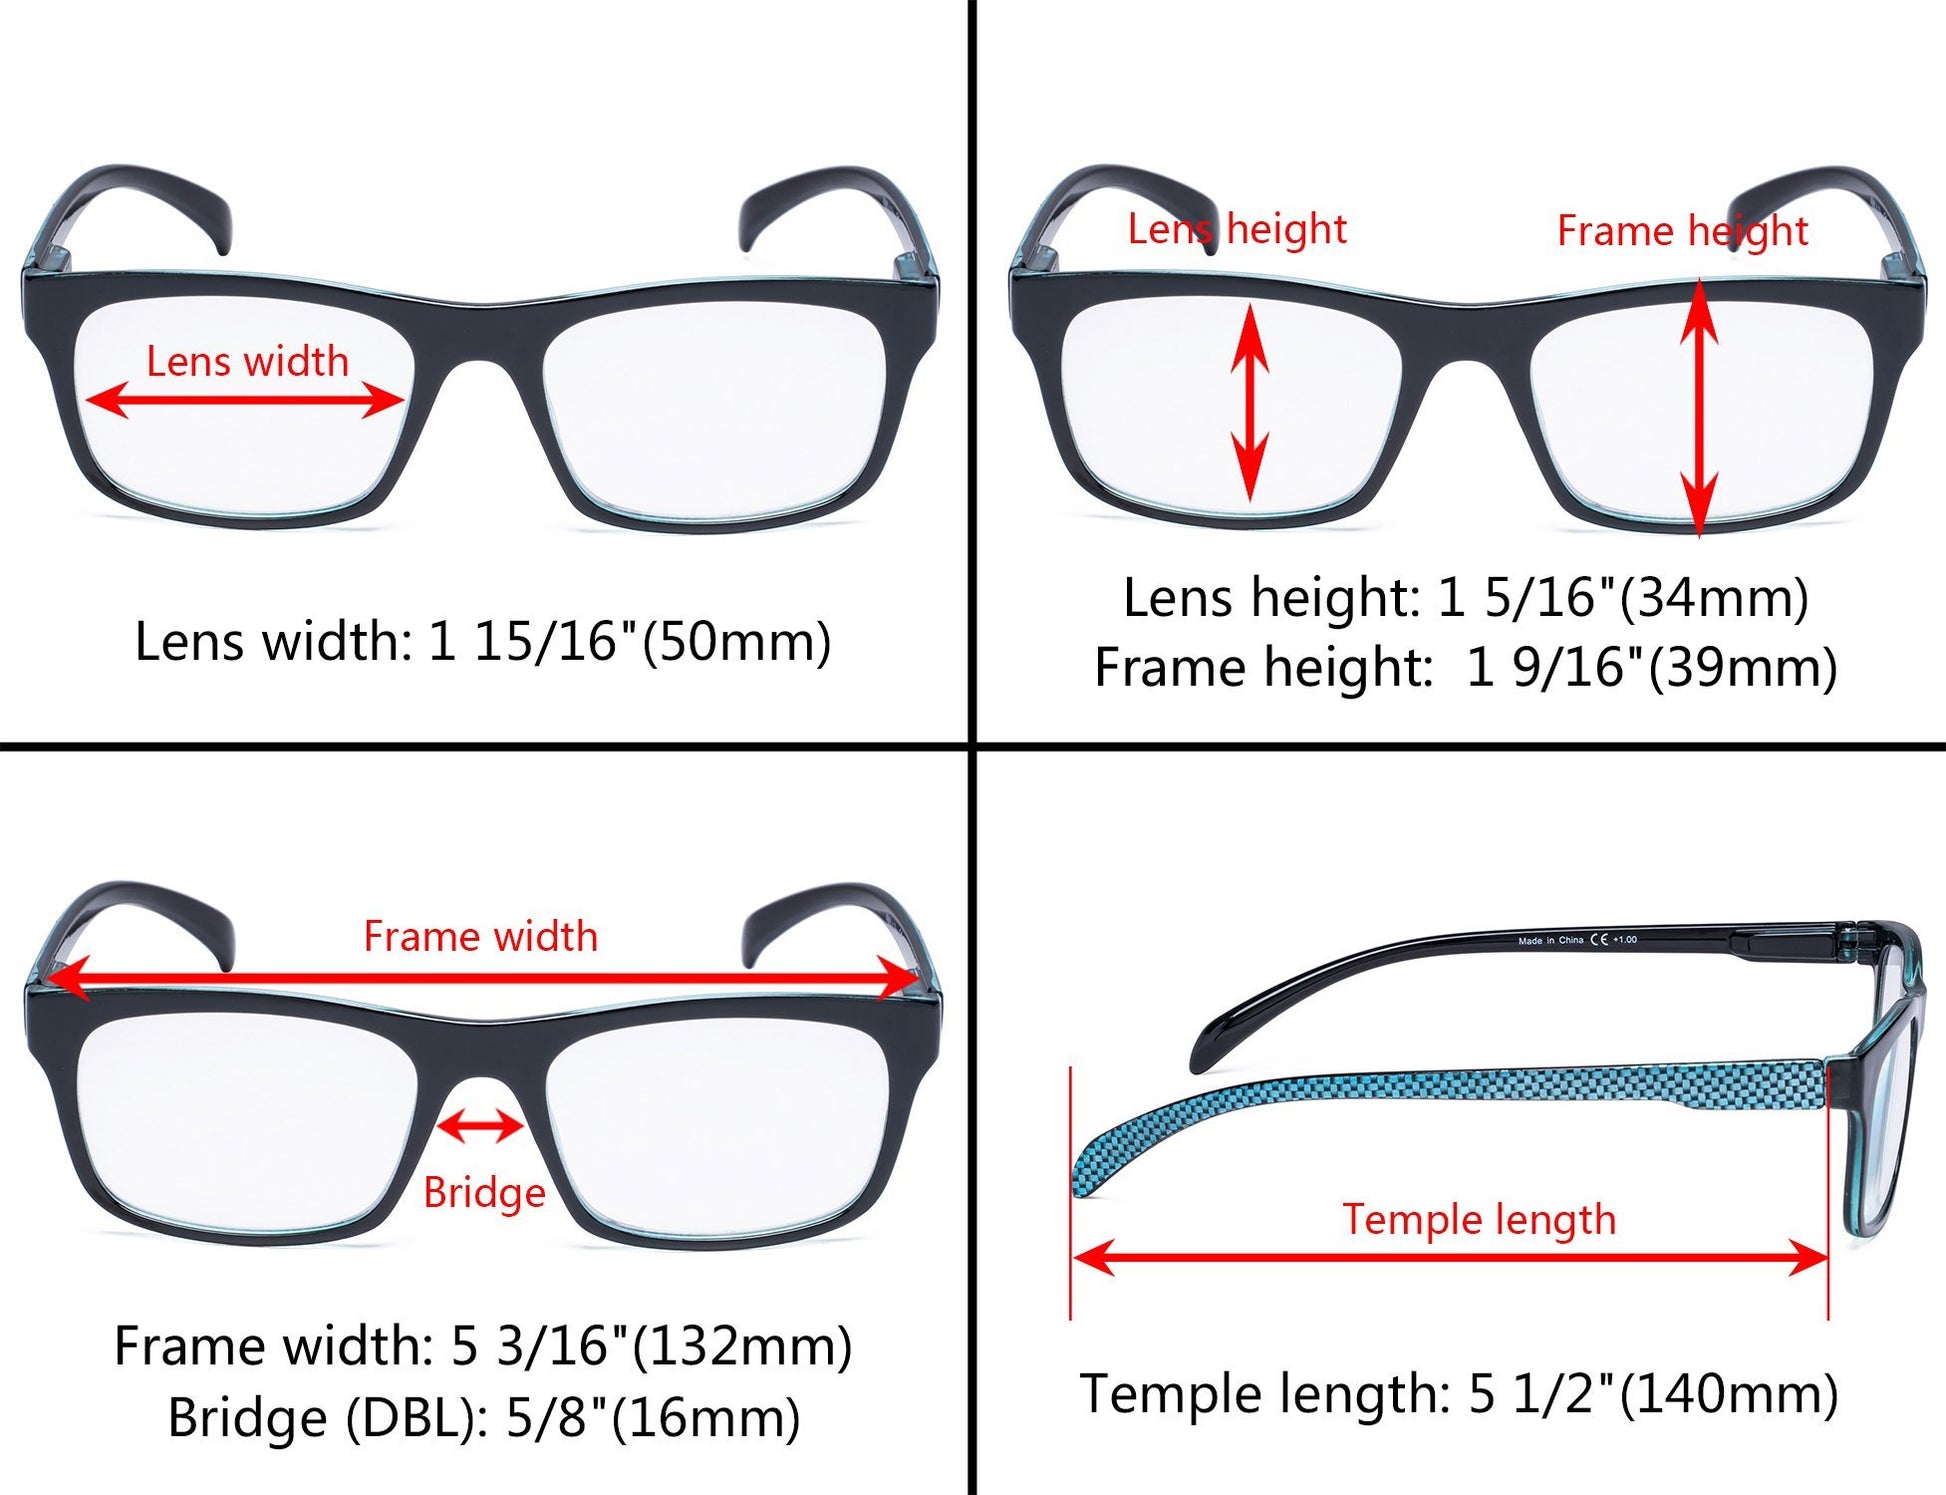 4 Pack Rectangle Pattern Reading Glasses for Women R047